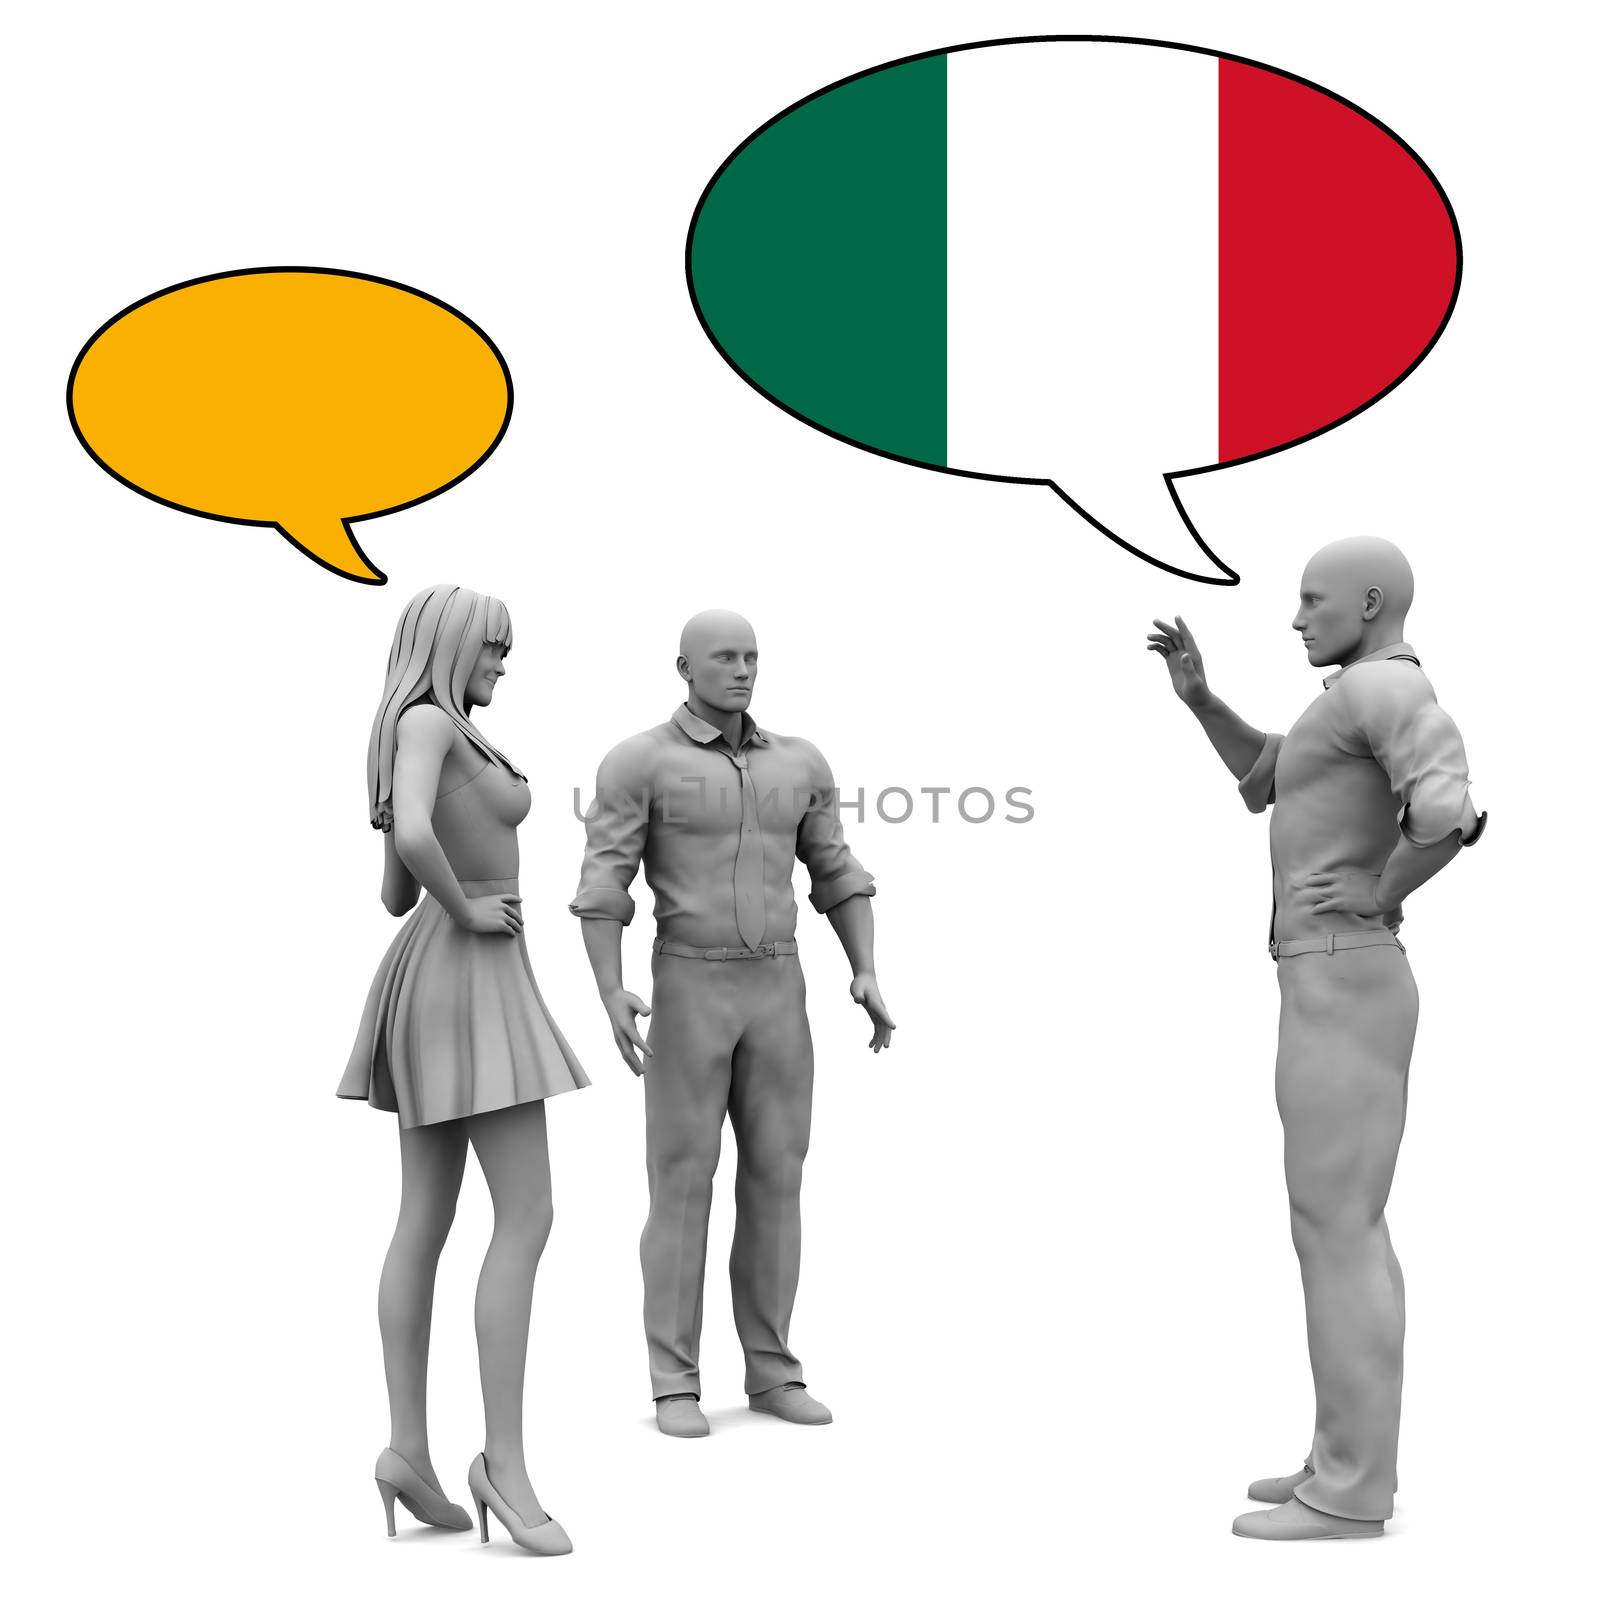 Learn Italian by kentoh